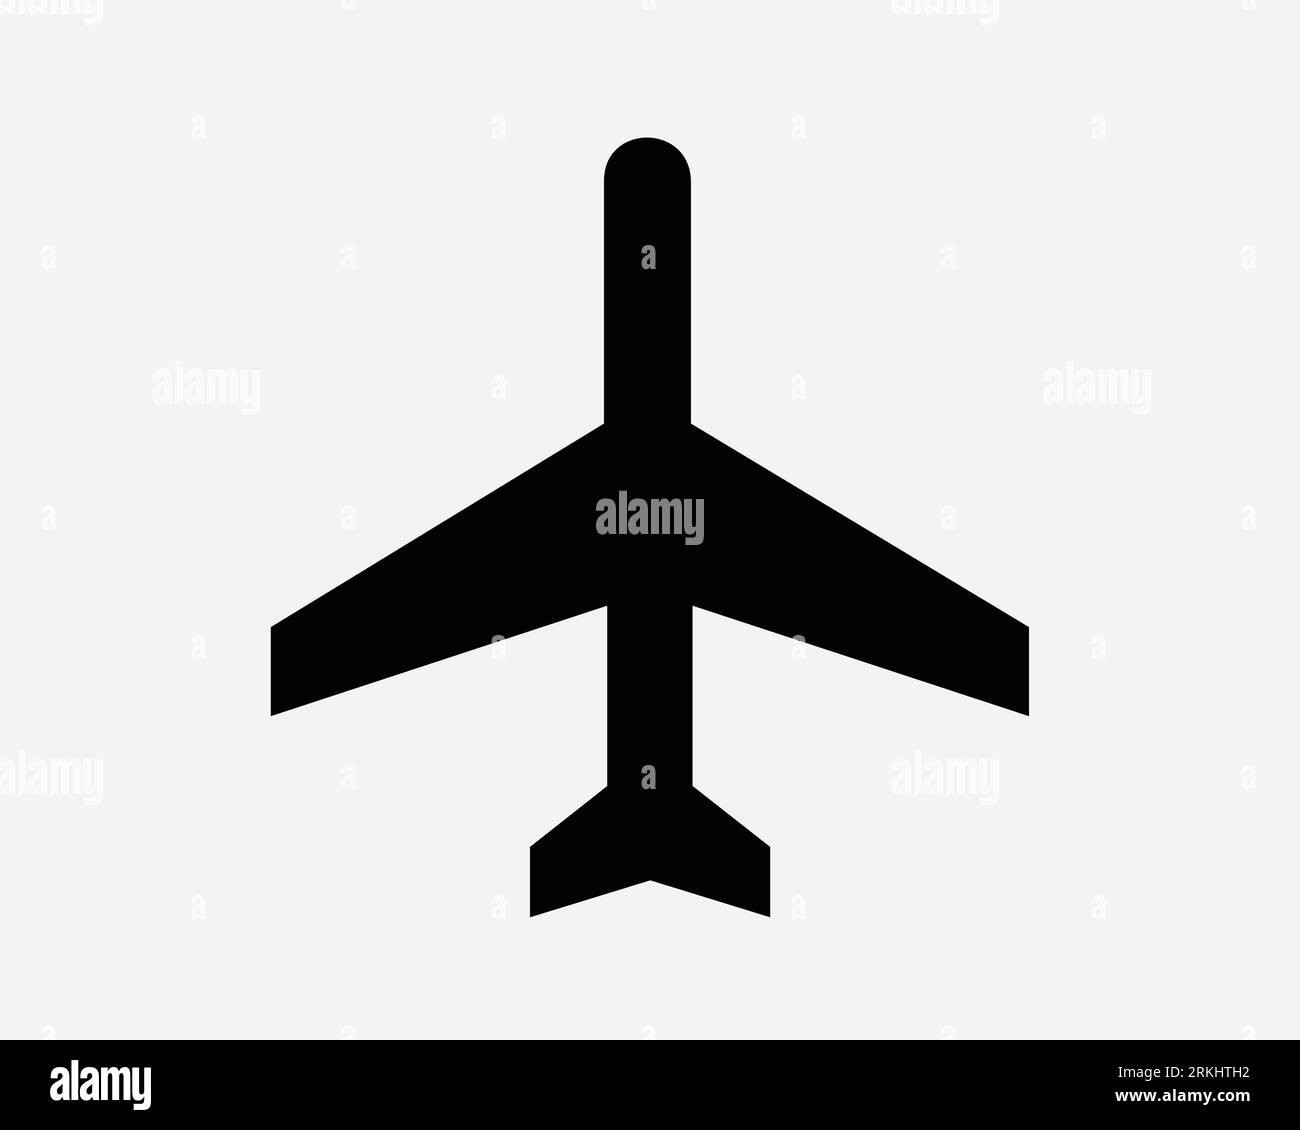 Flugzeugsymbol. Flugzeug Flugzeug Flugzeug Flughafen Airline Flug Flugzeug Jet Form Schwarz Weiß Vektor Clipart Grafik Illustration Artwork Sign Symbol Stock Vektor